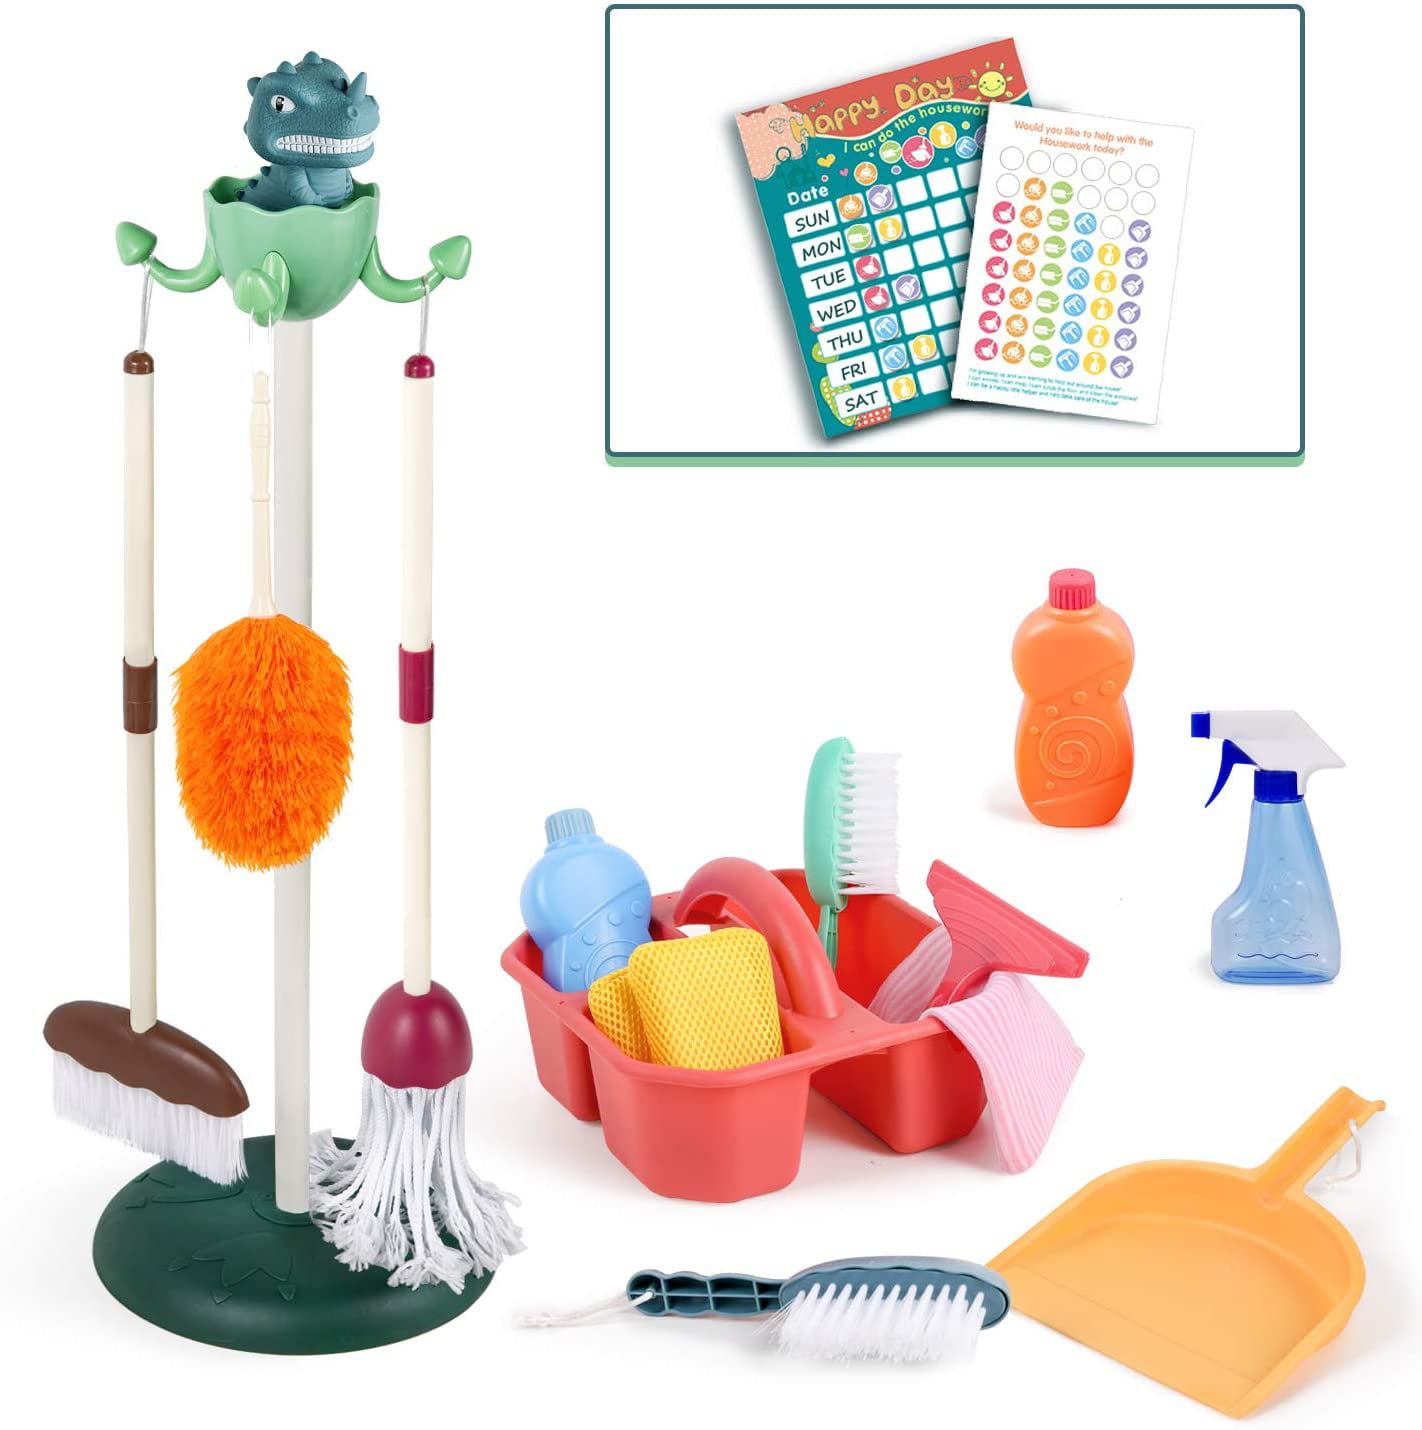 Kids Housekeeping Cleaning Tools Play-house Household Pretend Play Broom+Dustpan 